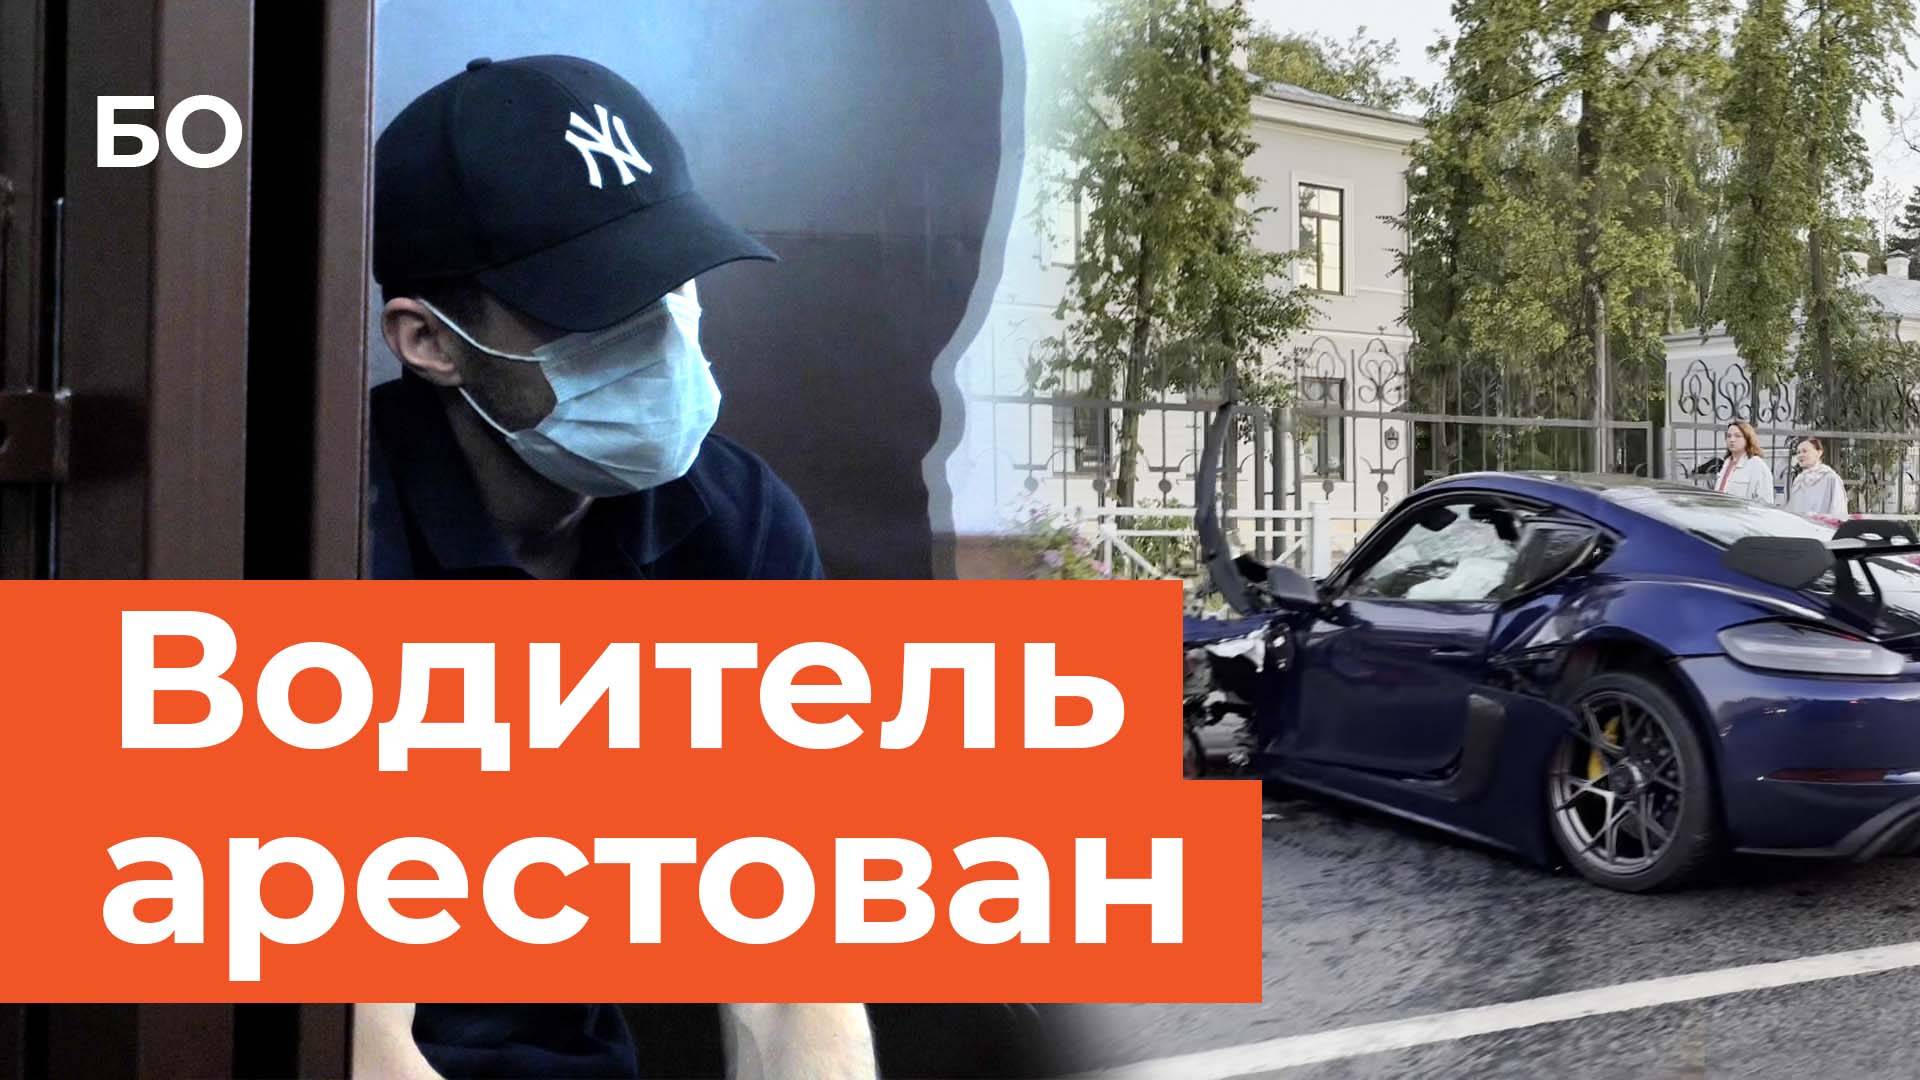 «Я признаю и раскаиваюсь»: водителя Porsche, устроившего смертельное ДТП в Казани, отправили в СИЗО